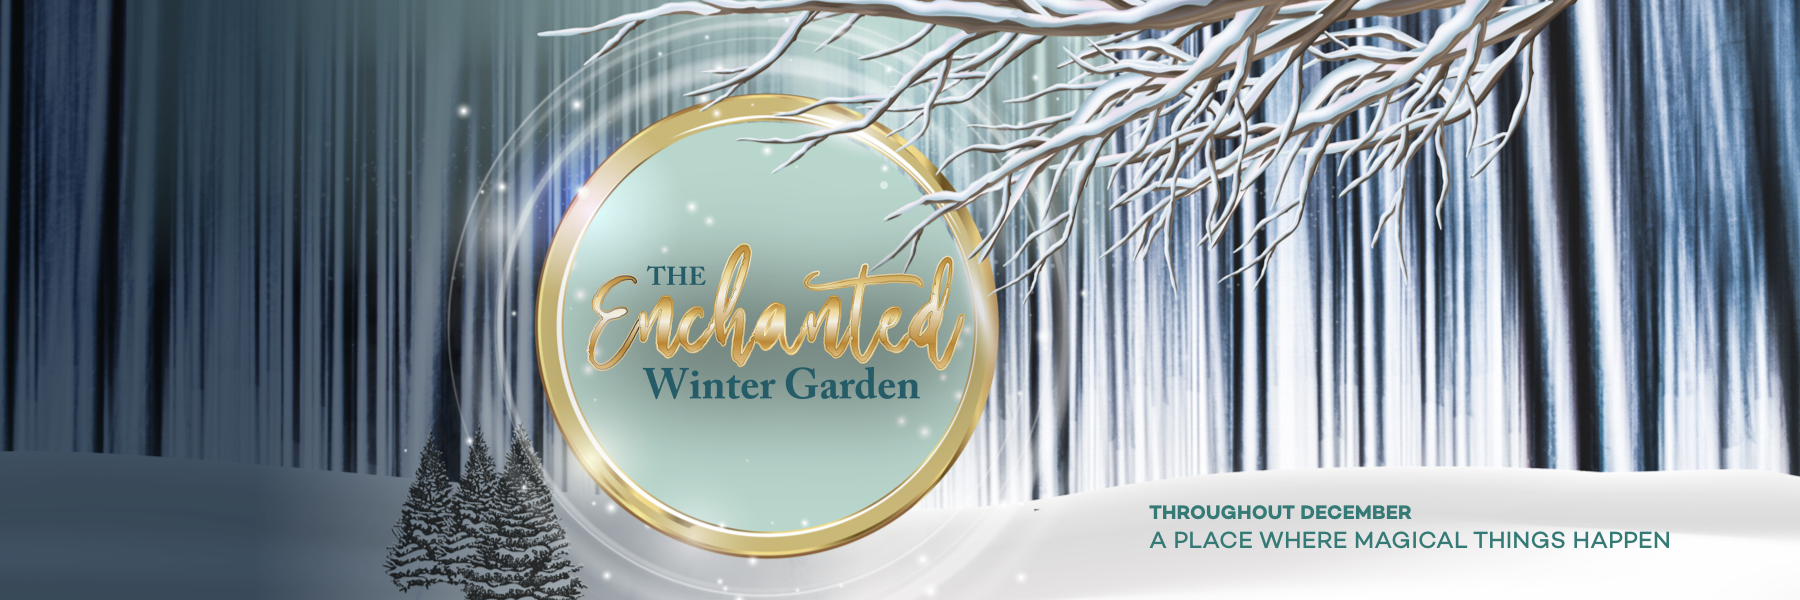 The Enchanted Winter Garden